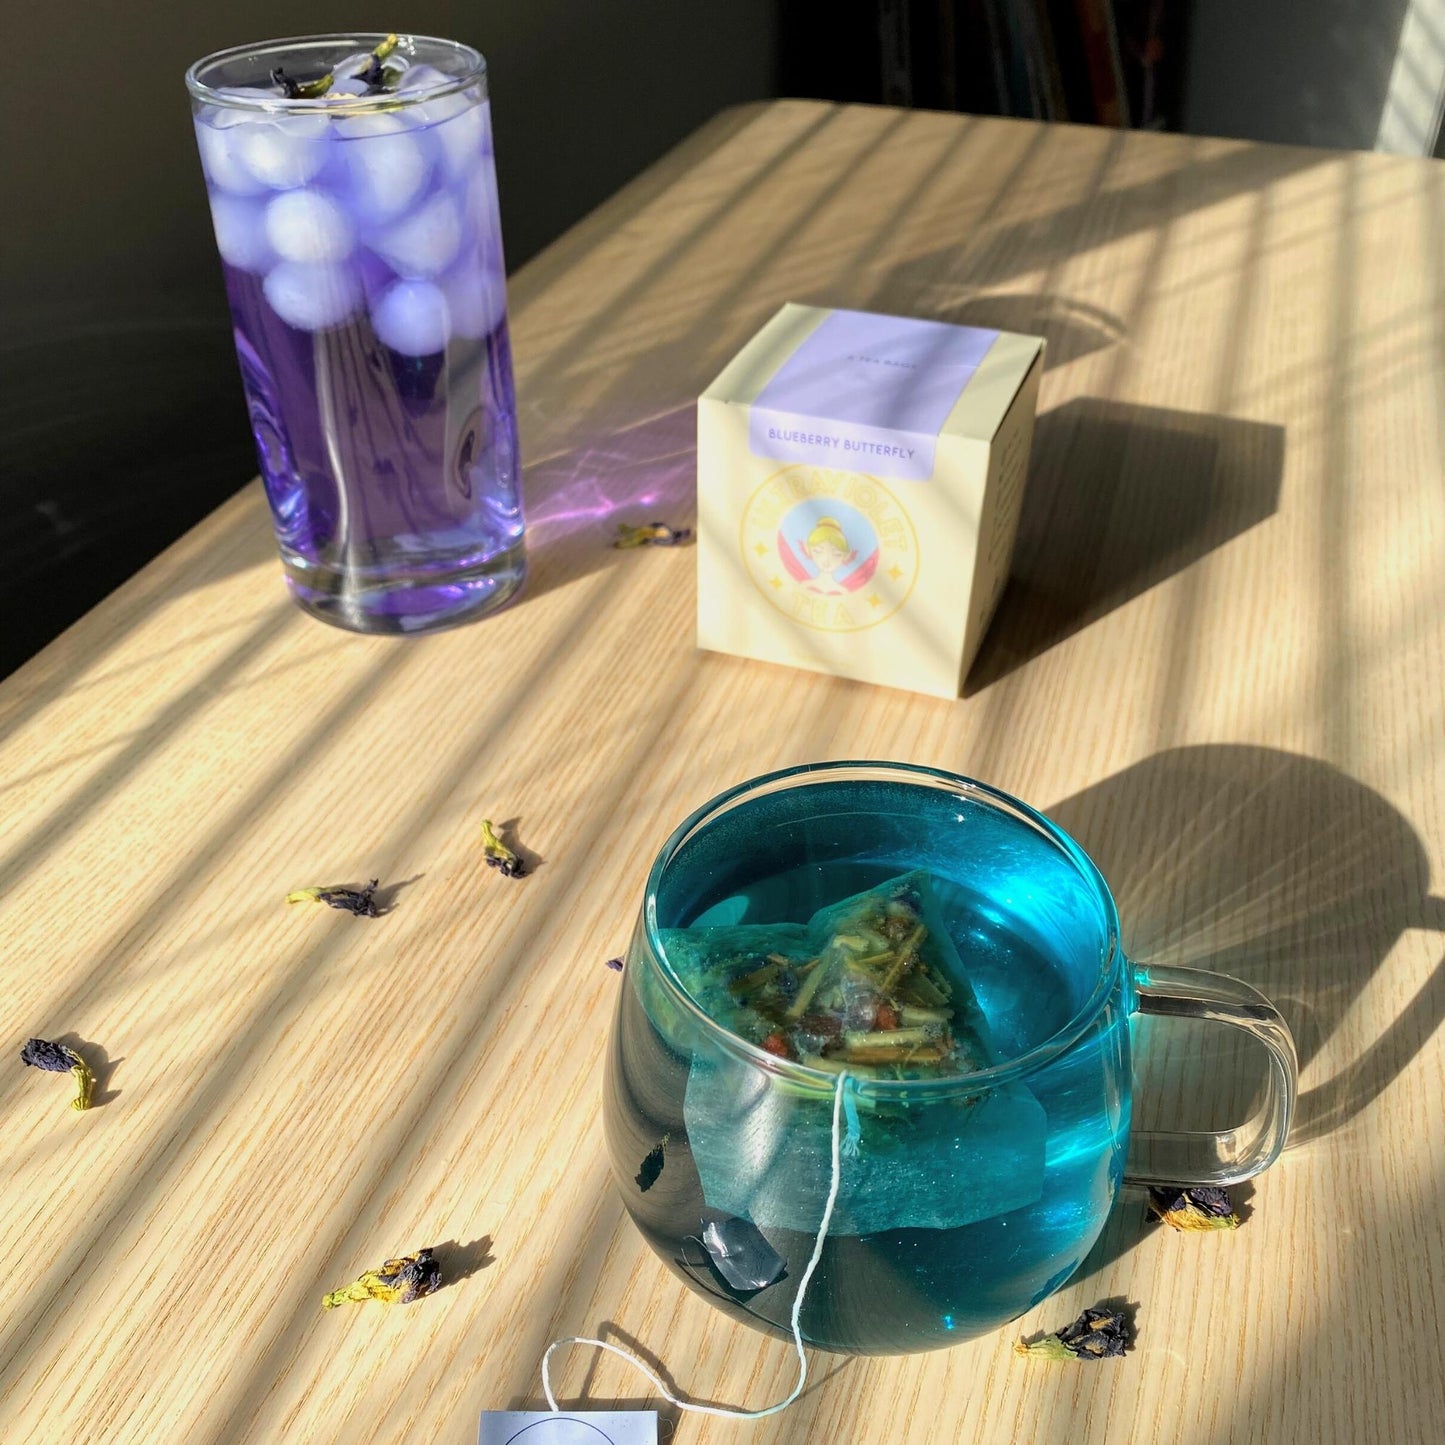 Blueberry Butterfly Tea | Butterfly Pea Flower Tea